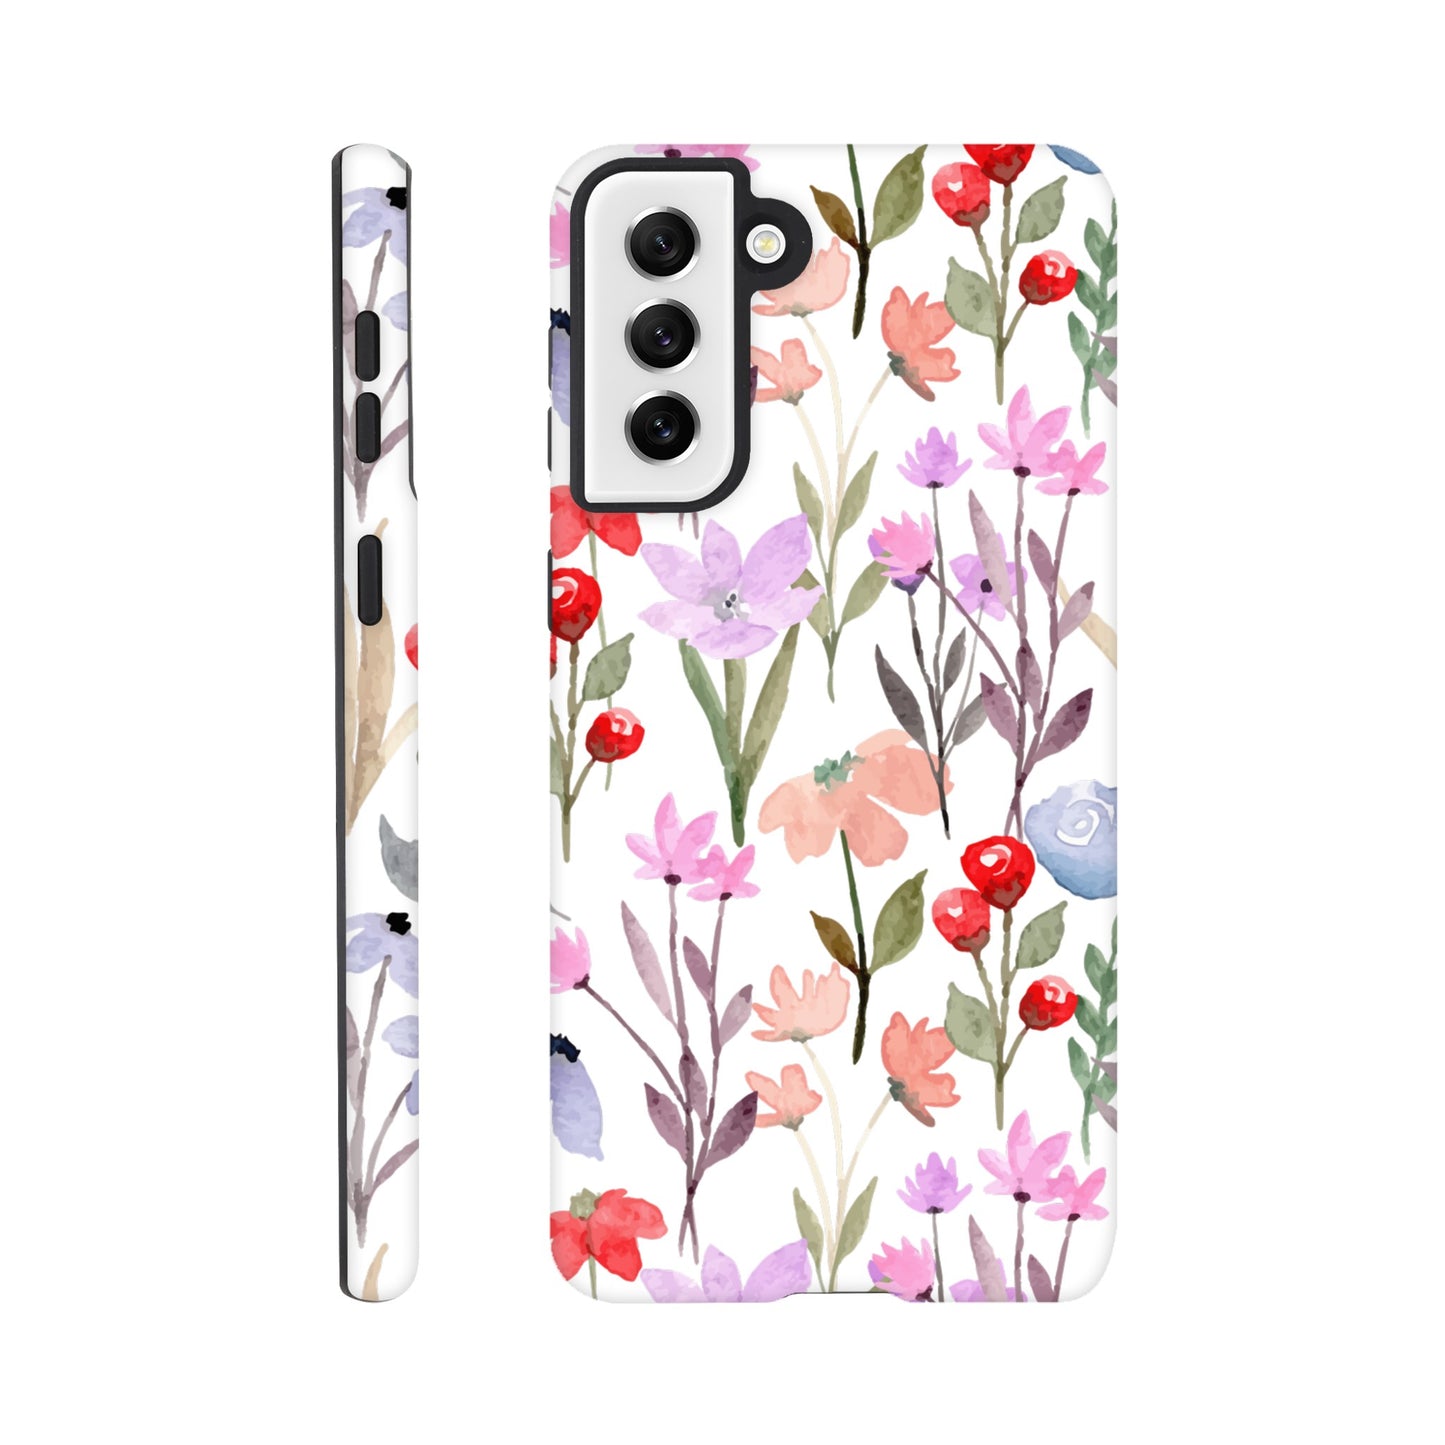 Watercolour Flowers - Phone Tough Case Galaxy S21 Plus Phone Case Plants